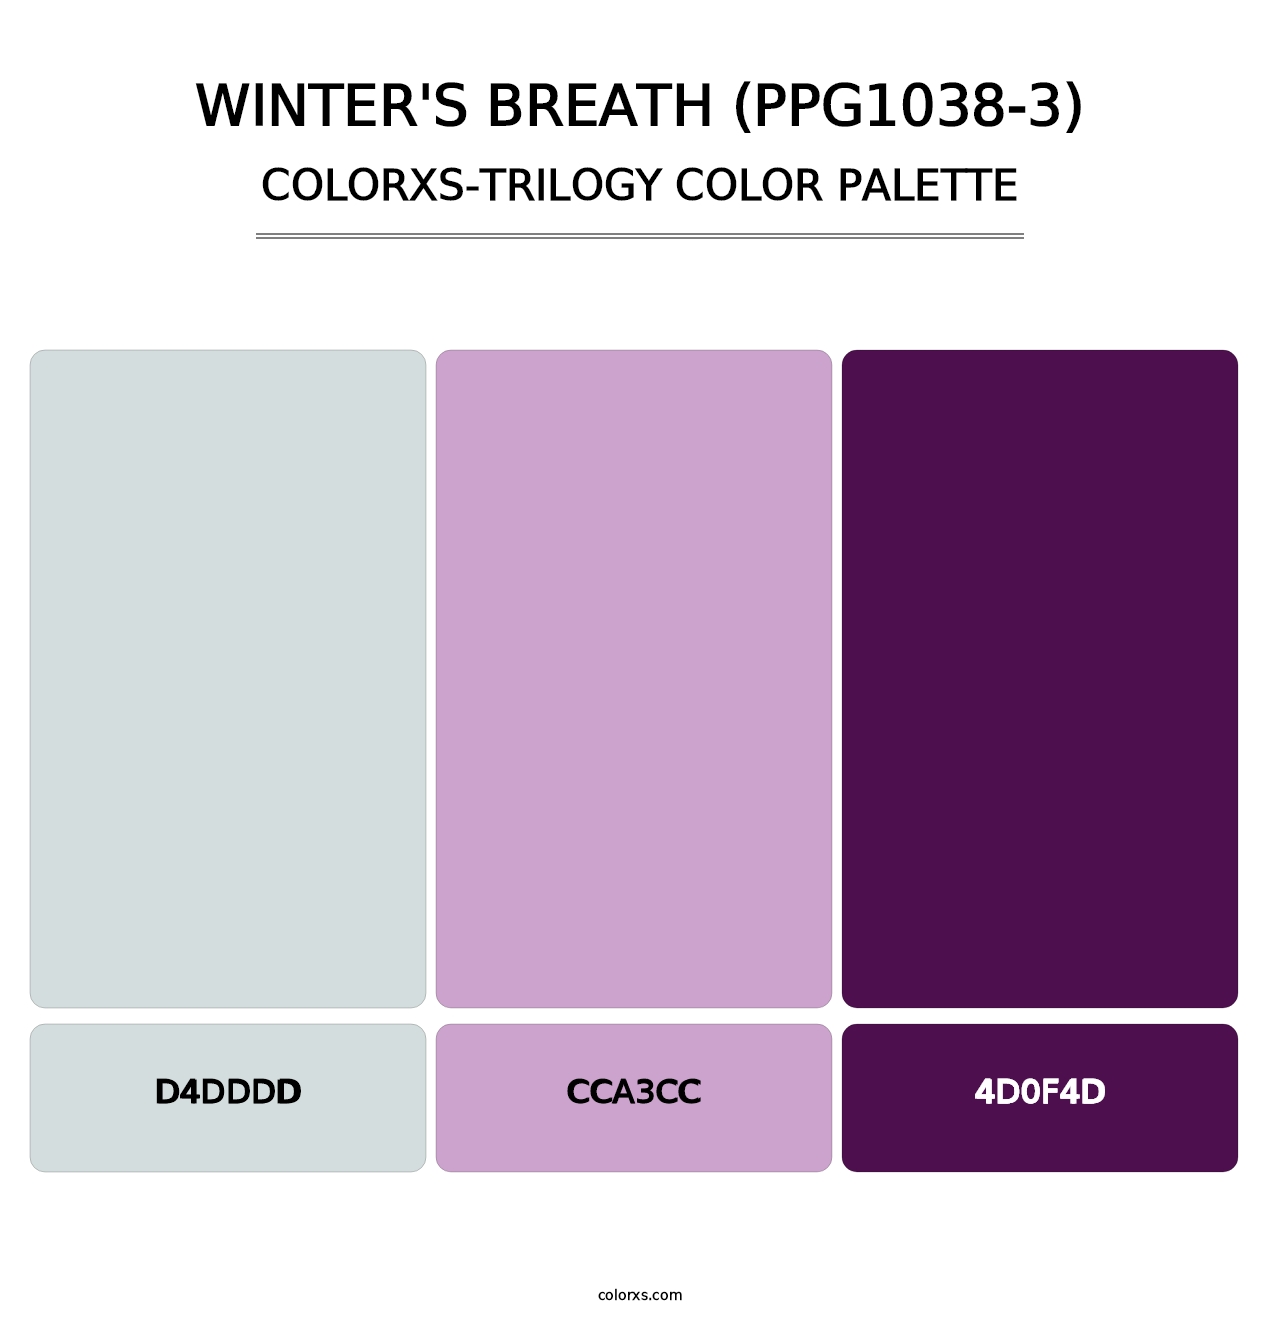 Winter's Breath (PPG1038-3) - Colorxs Trilogy Palette